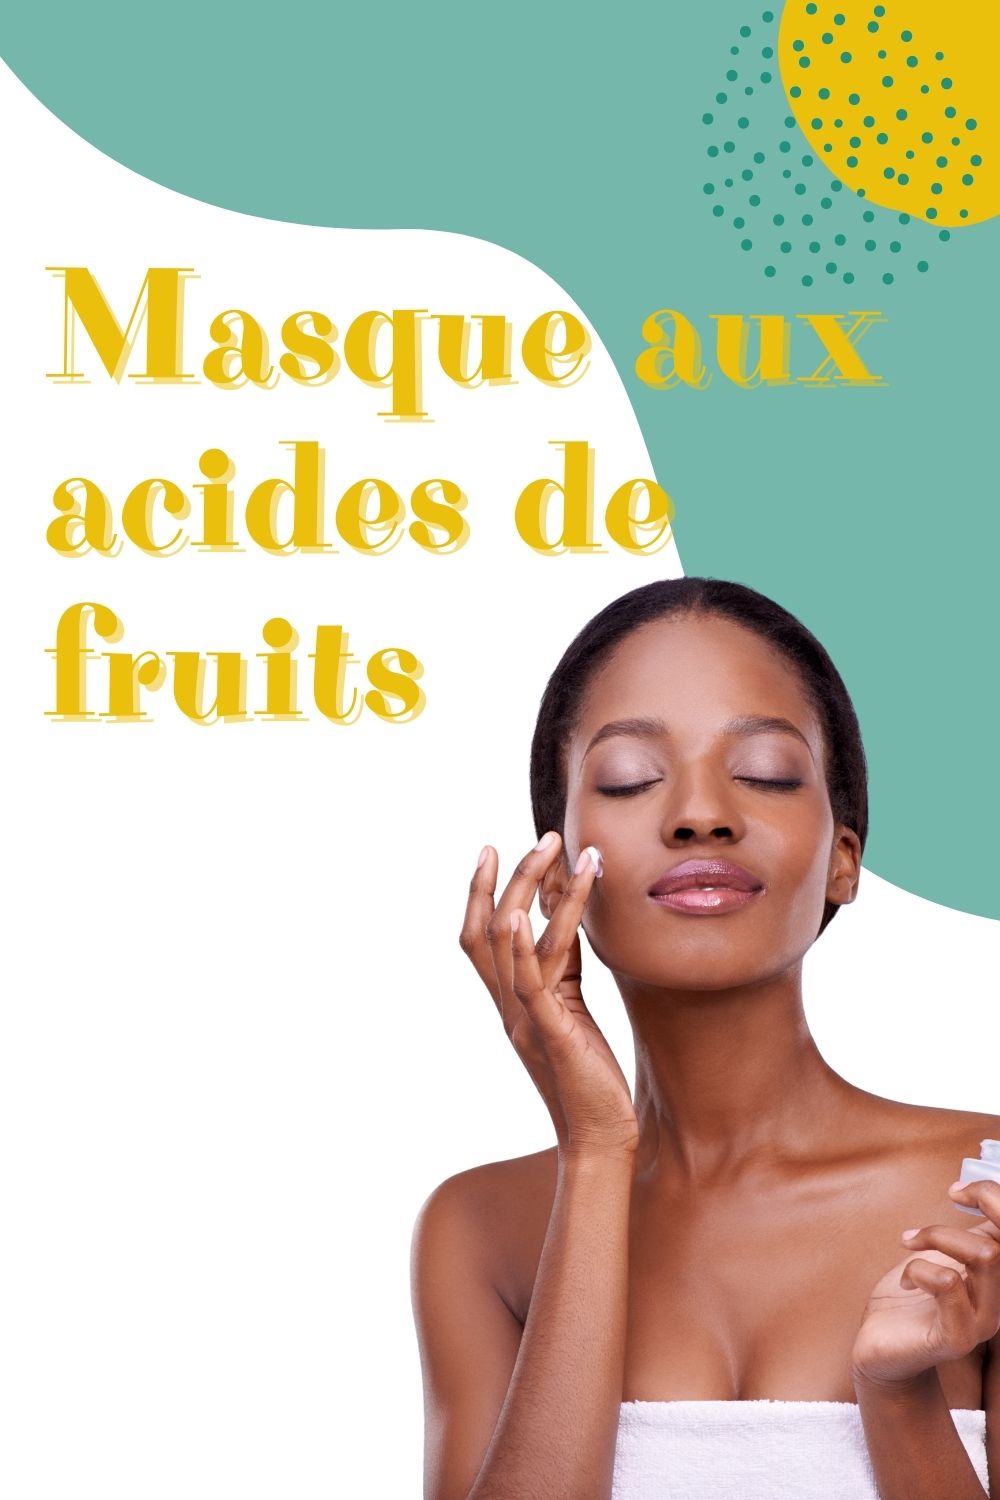 Masque aux acides de fruits